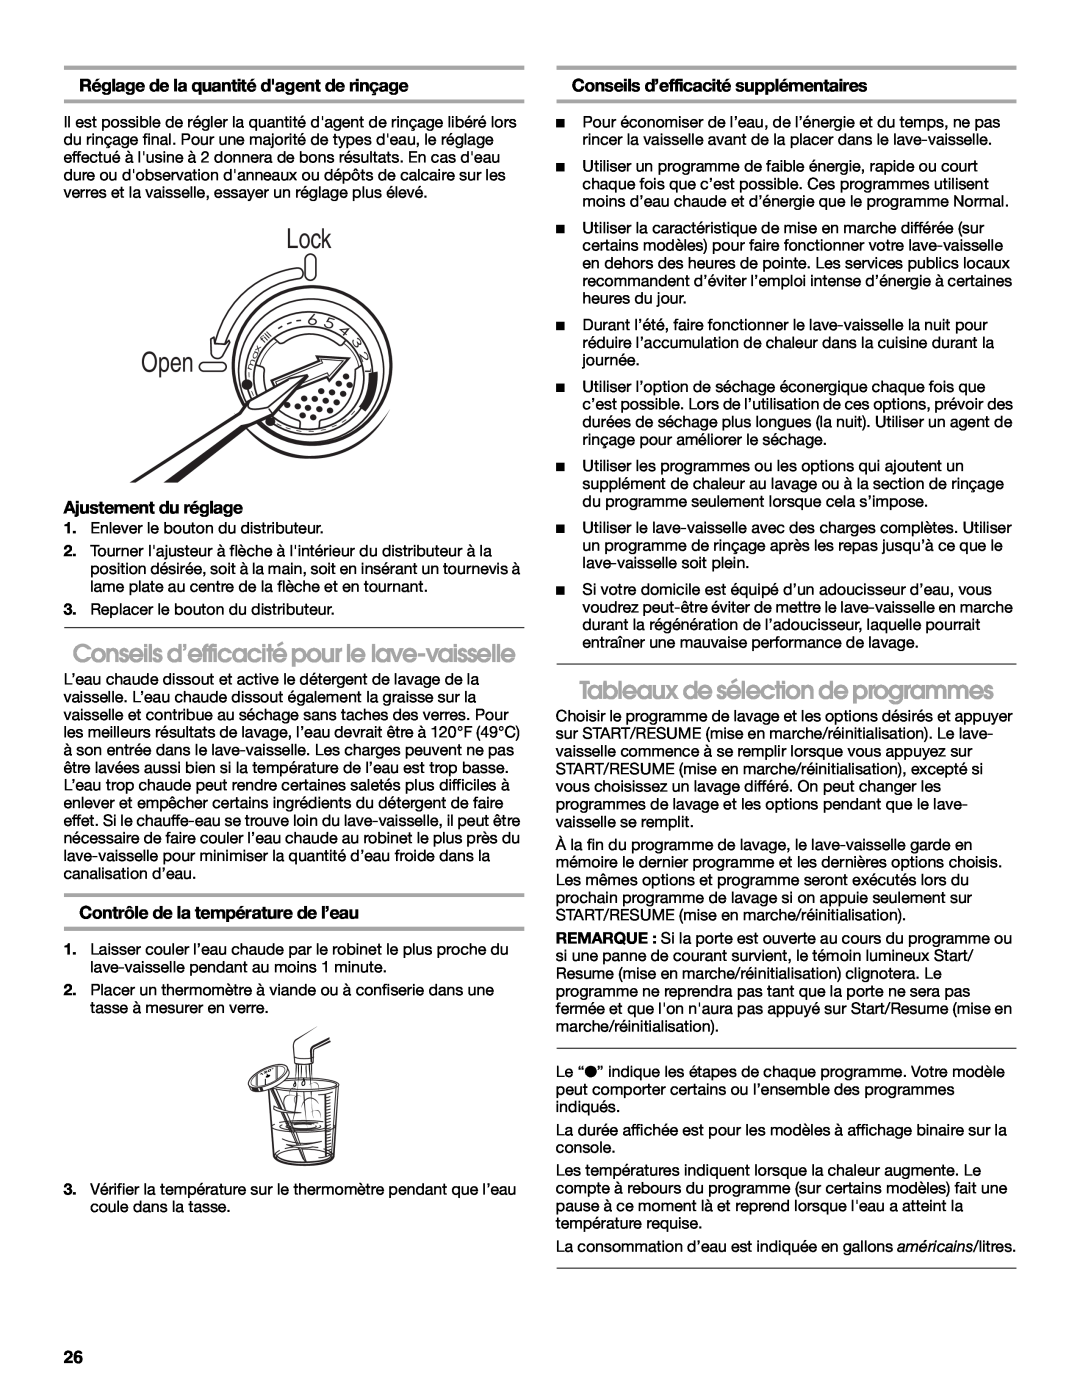 Roper RUD8000S Conseils d’efficacité pour le lave-vaisselle, Tableaux de sélection de programmes, Ajustement du réglage 